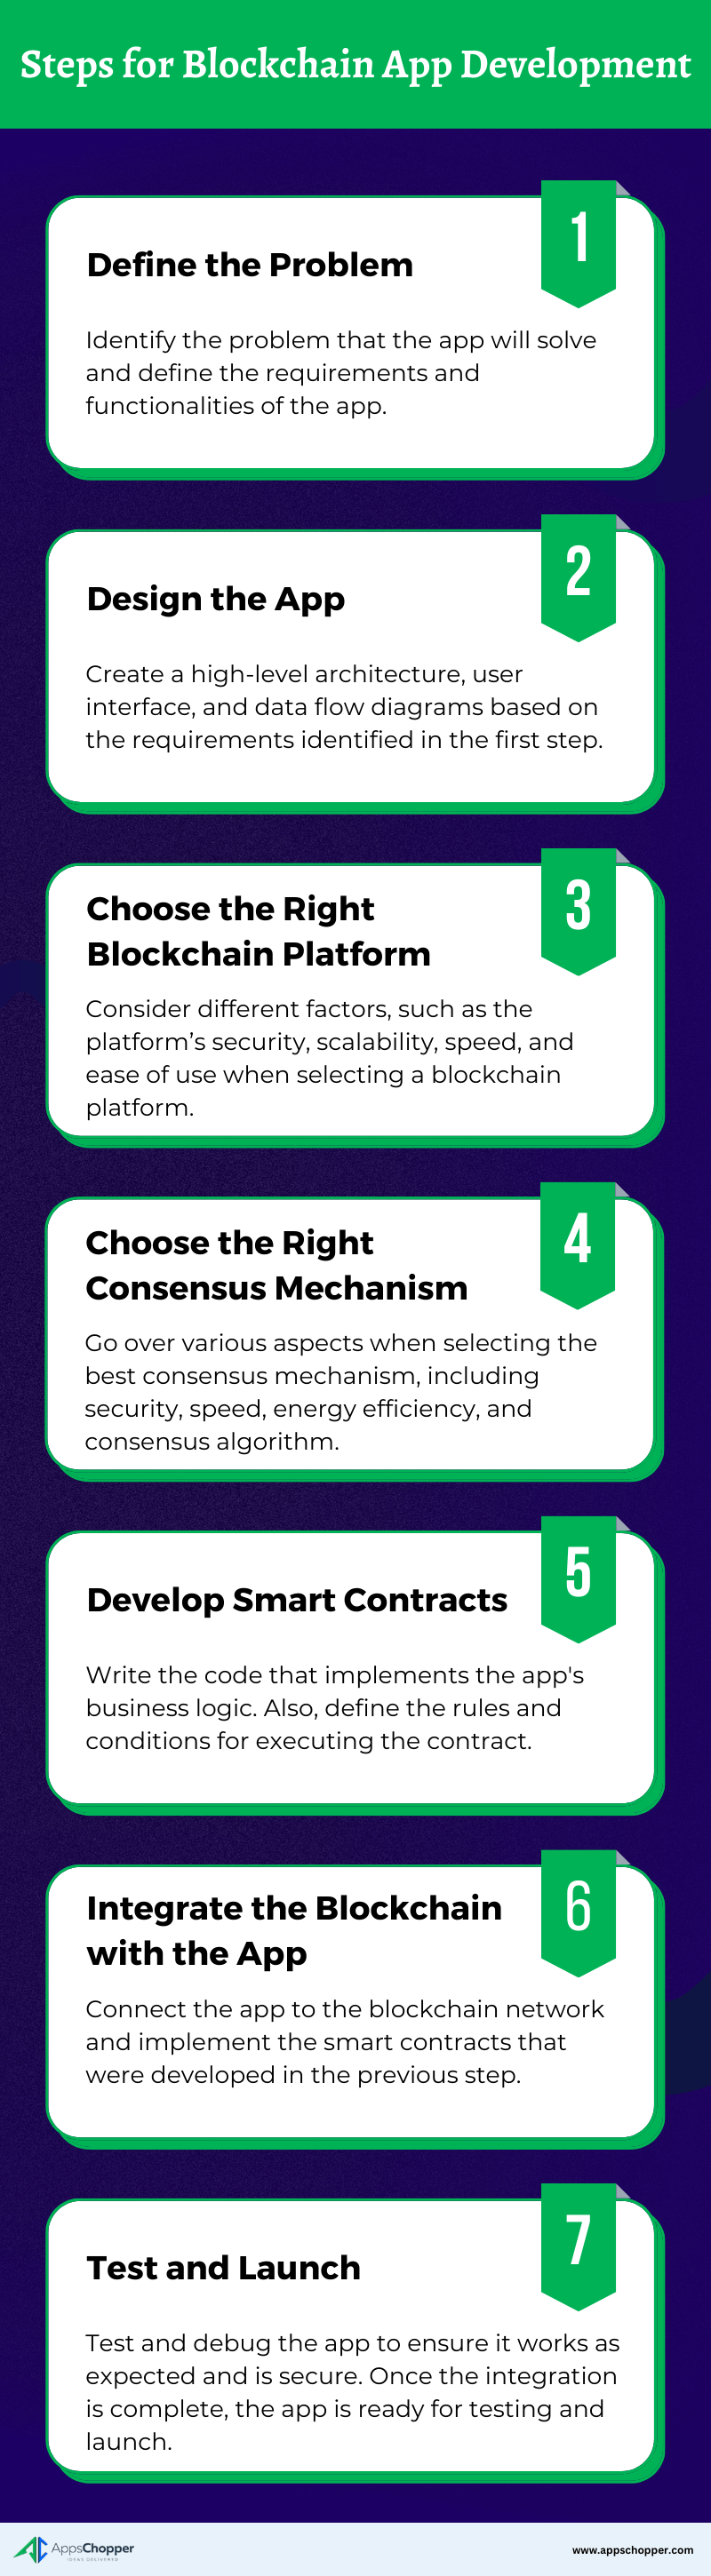 Steps for blockchain app development